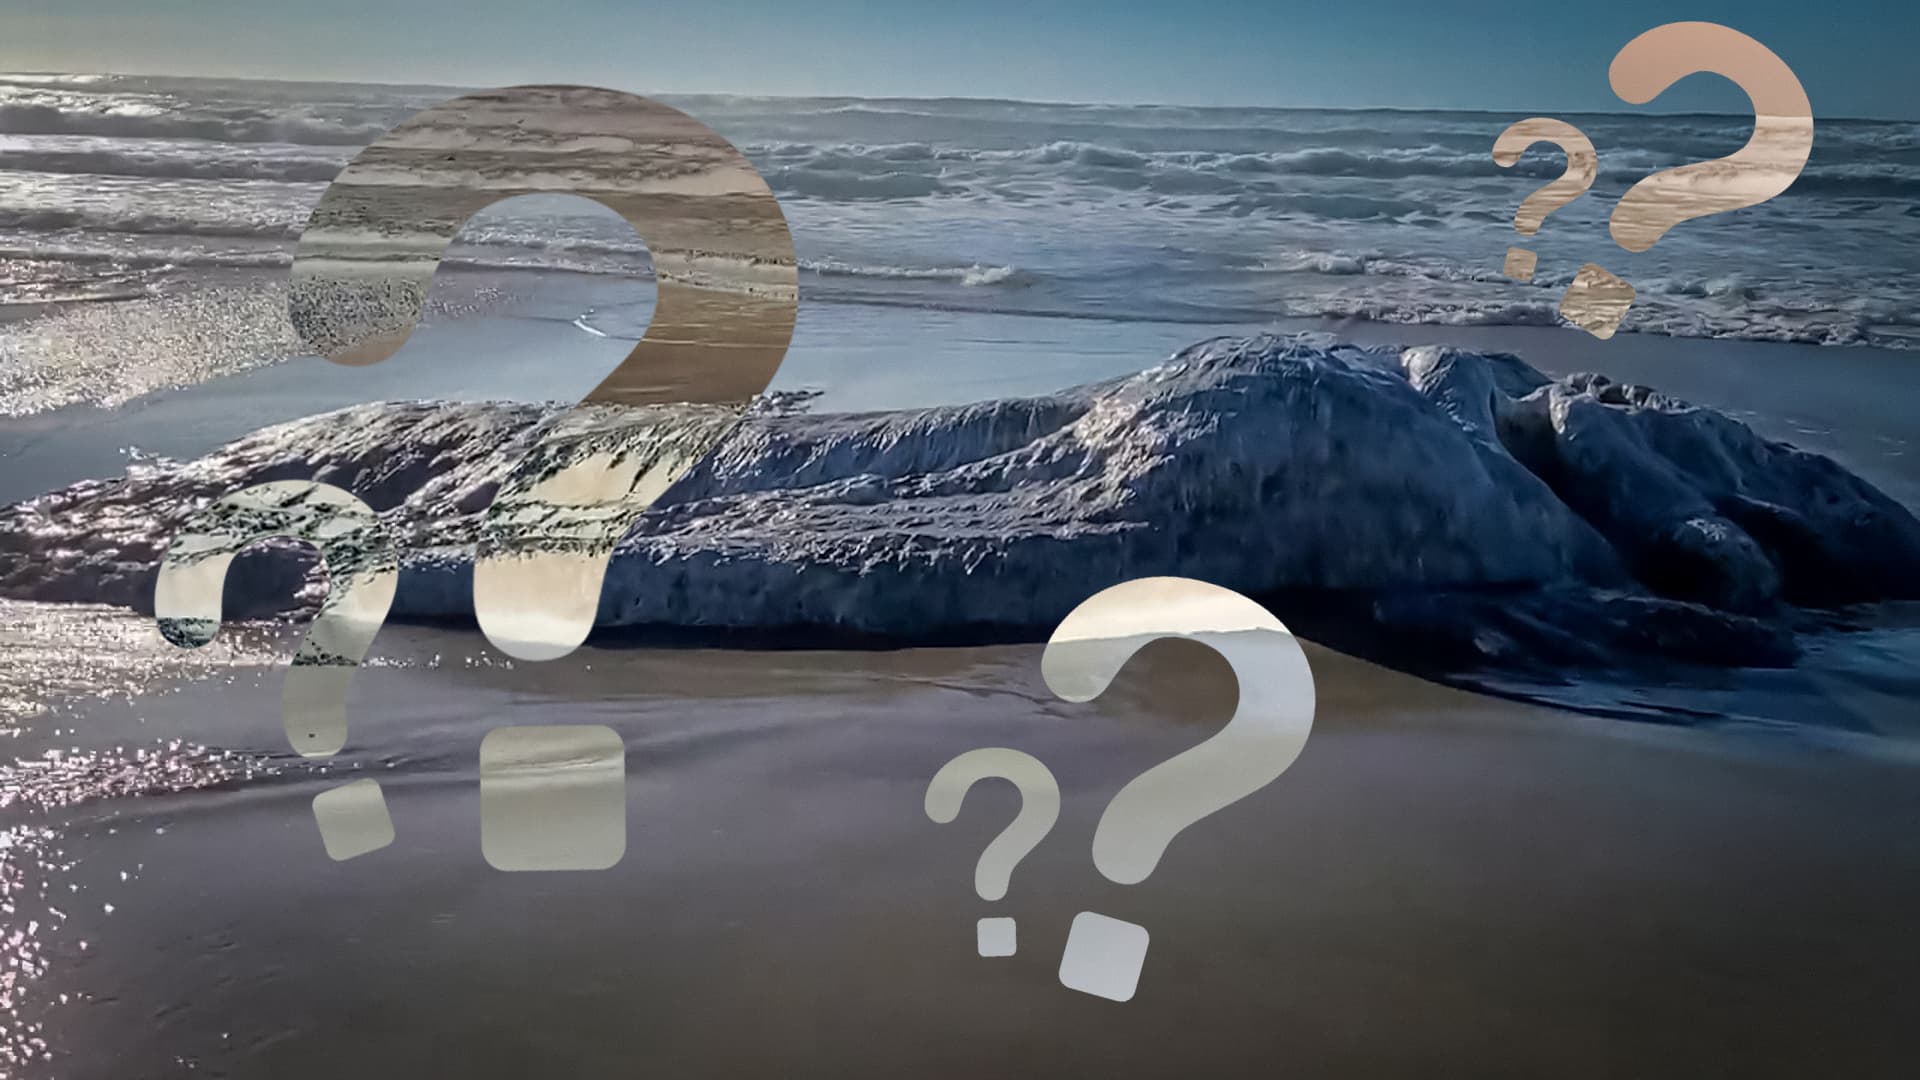 Misterioso monstro marinho peludo aparece em praia dos EUA